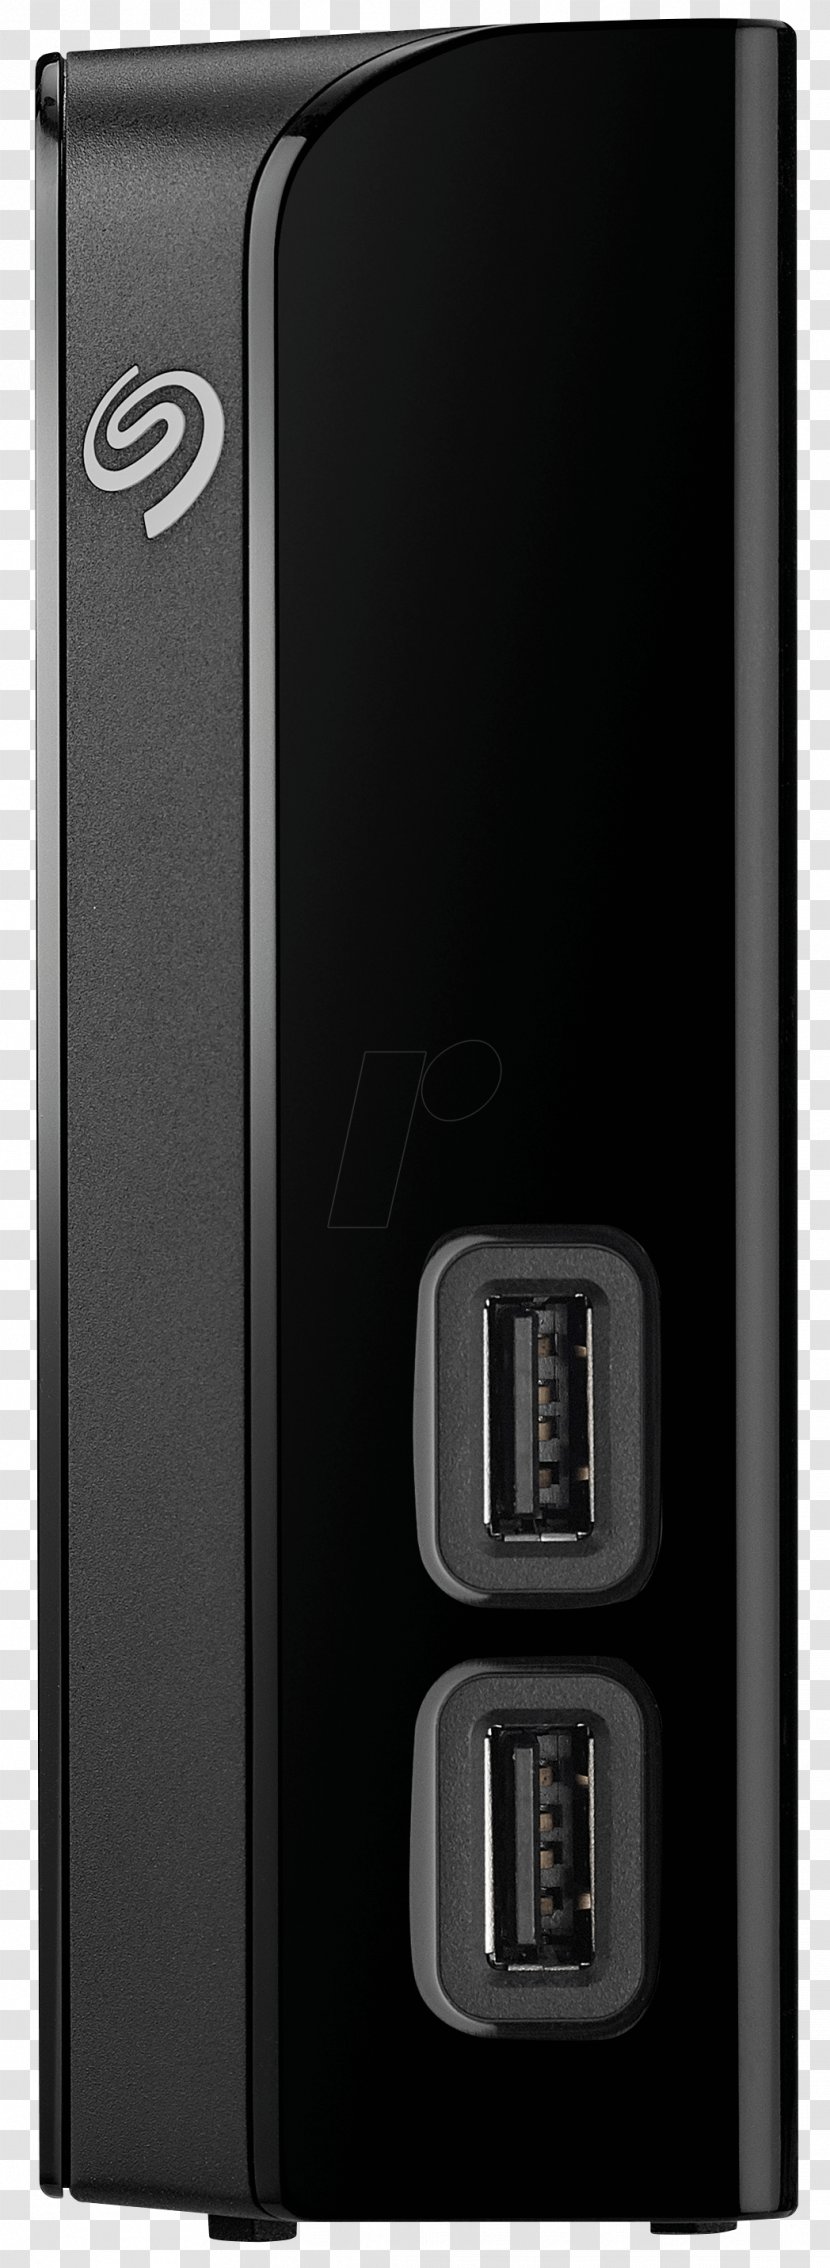 Hard Drives USB 3.0 External Storage Backup - Usb 30 Transparent PNG